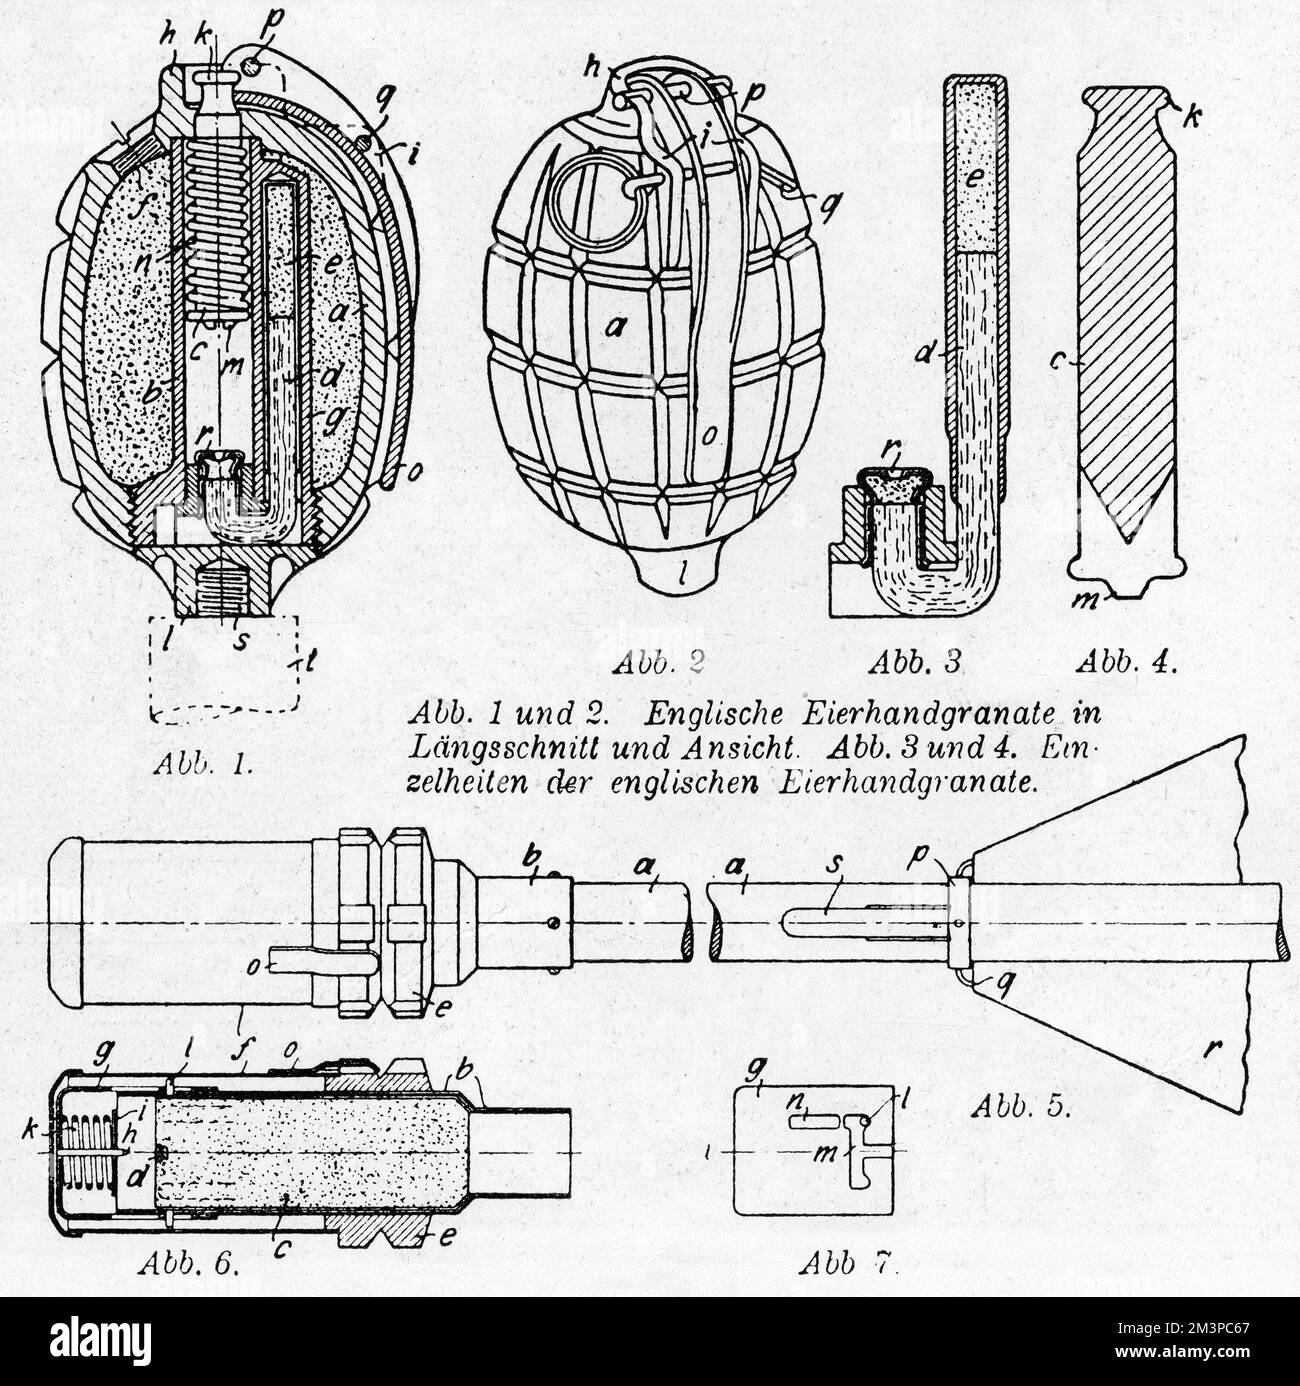 Disegno riprodotto da un articolo di giornale settimanale tedesco che forniva particolari delle granate a mano britanniche e russe. Fig. 1, 2, 3 &amp; 4 illustrano la granata Mills. Data: 1918 Foto Stock